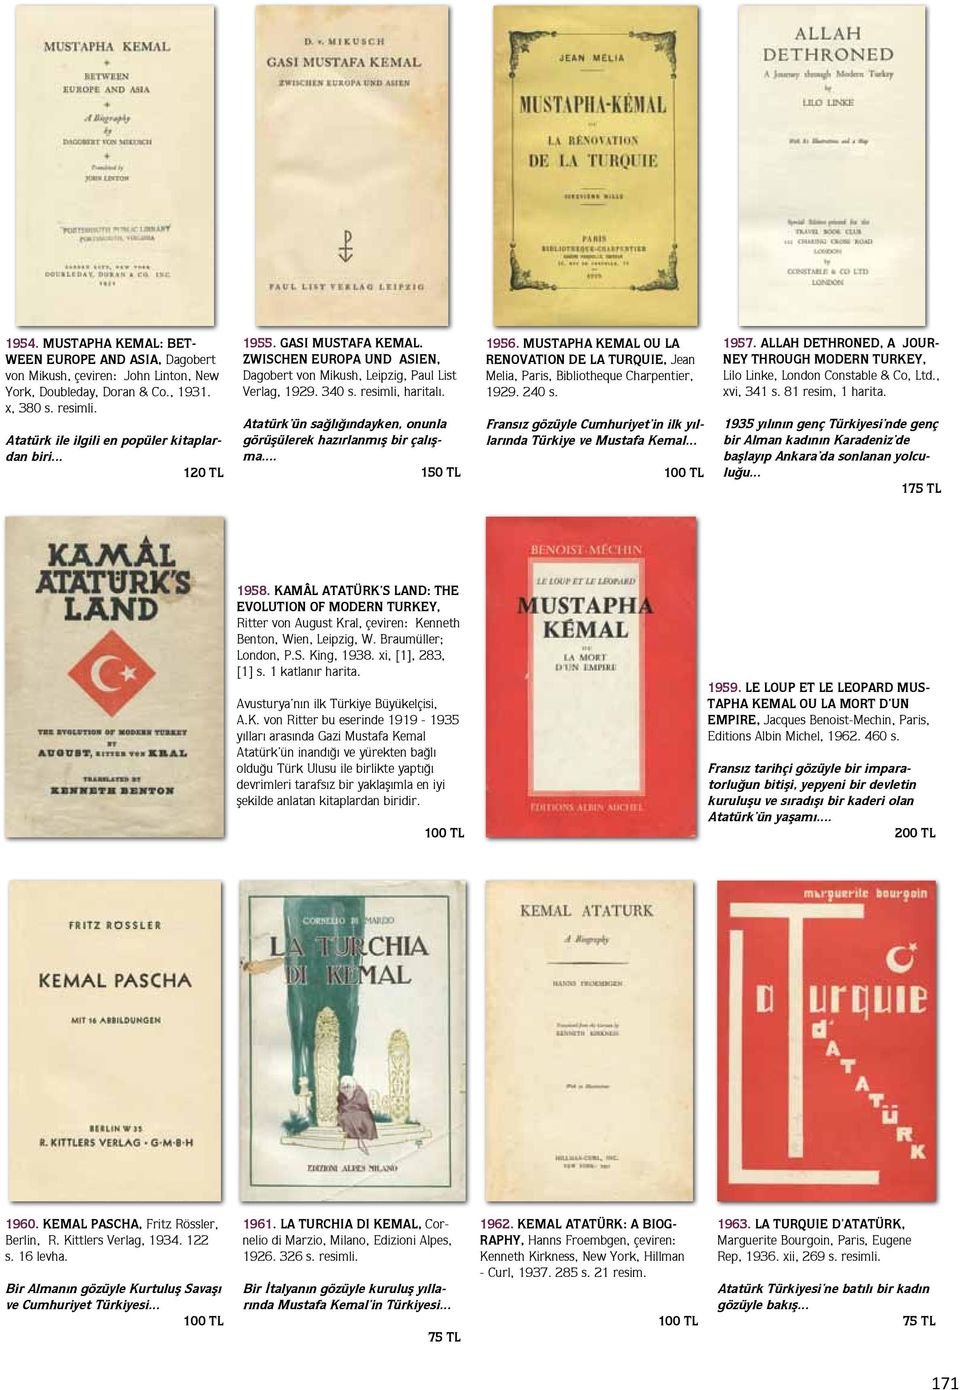 Atatürk ün sağlığındayken, onunla görüşülerek hazırlanmış bir çalışma... 150 TL 1956. MUSTAPHA KEMAL OU LA RENOVATION DE LA TURQUIE, Jean Melia, Paris, Bibliotheque Charpentier, 1929. 240 s.